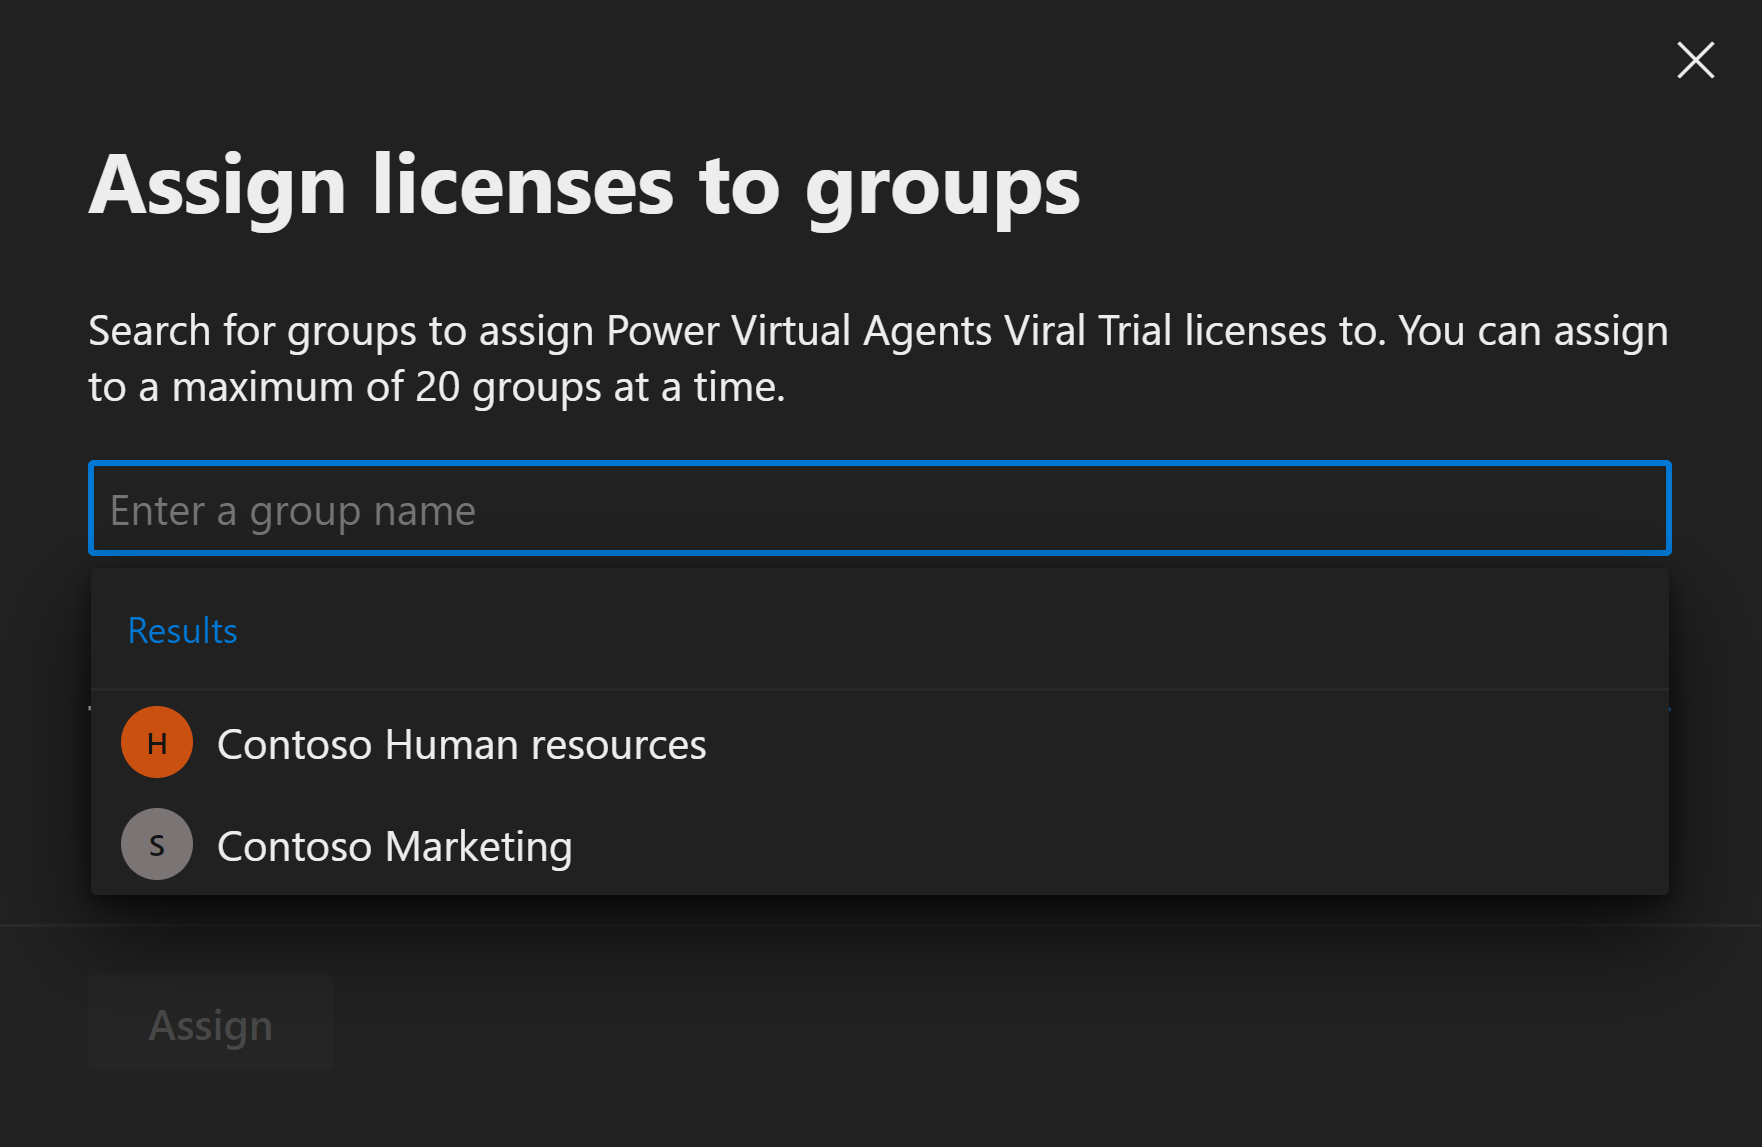 Снимок экрана: портал, позволяющий пользователям выбирать группу для назначения лицензий.